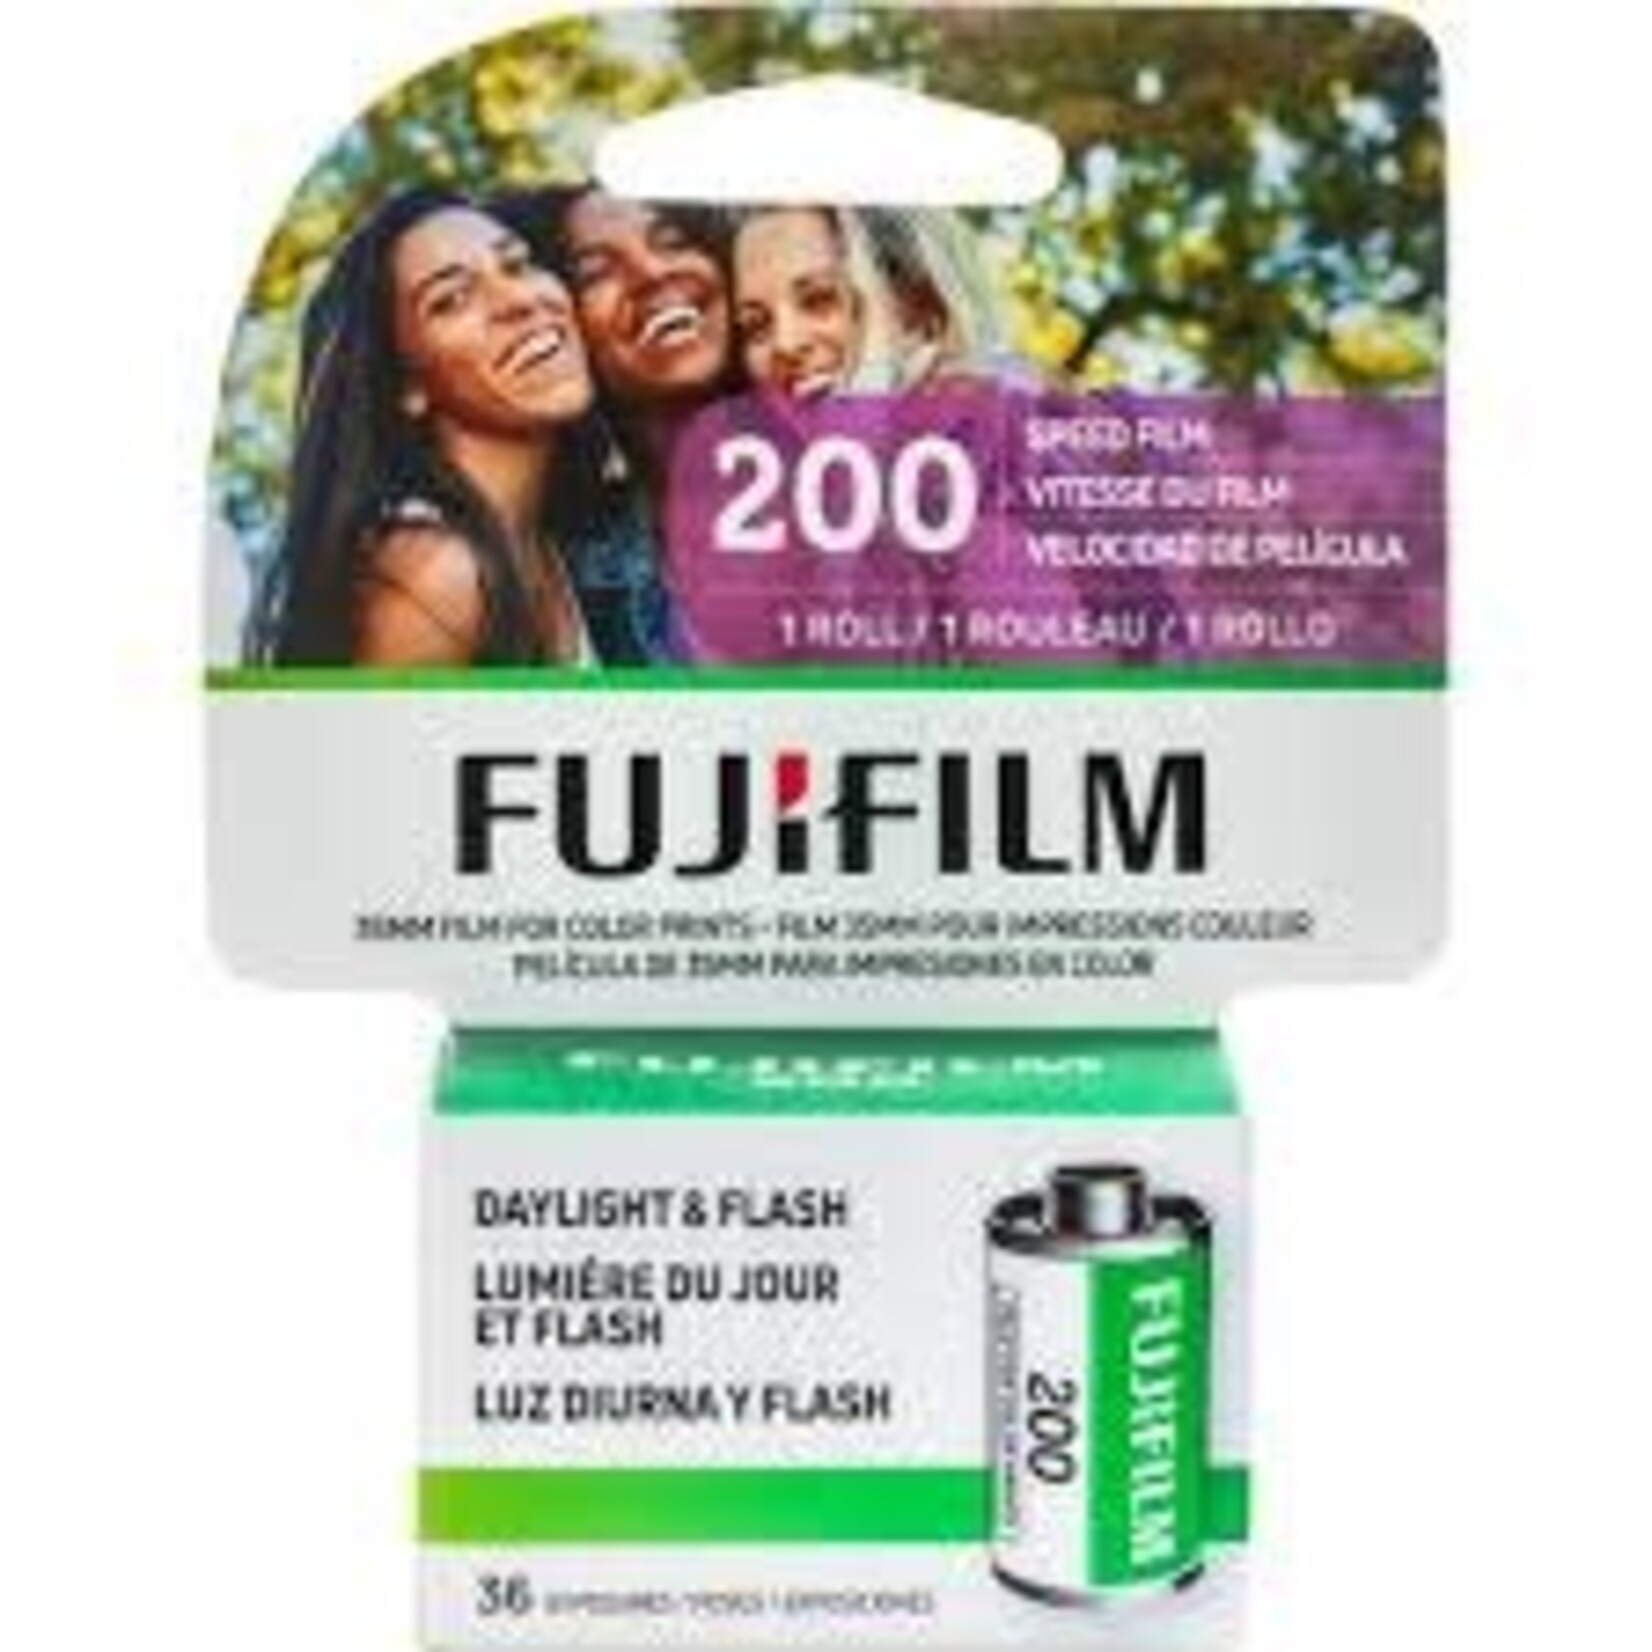 Fujifilm Fujifilm 35/200/36 Color